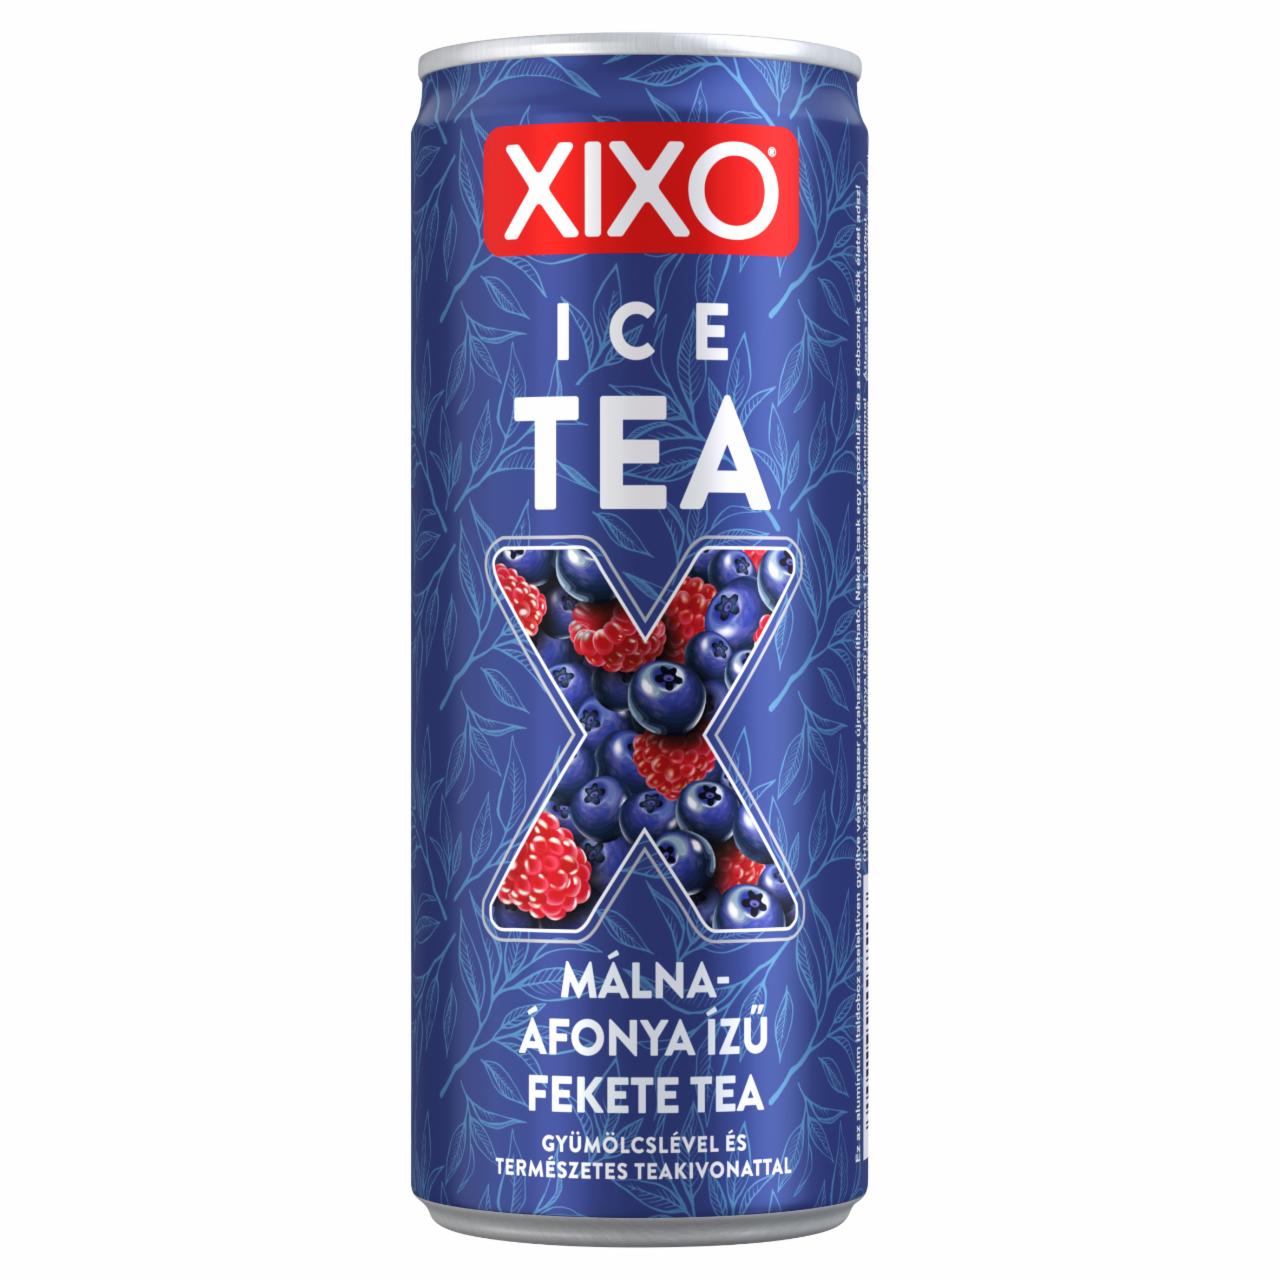 Képek - XIXO Ice Tea málna-áfonya ízű fekete tea 250 ml